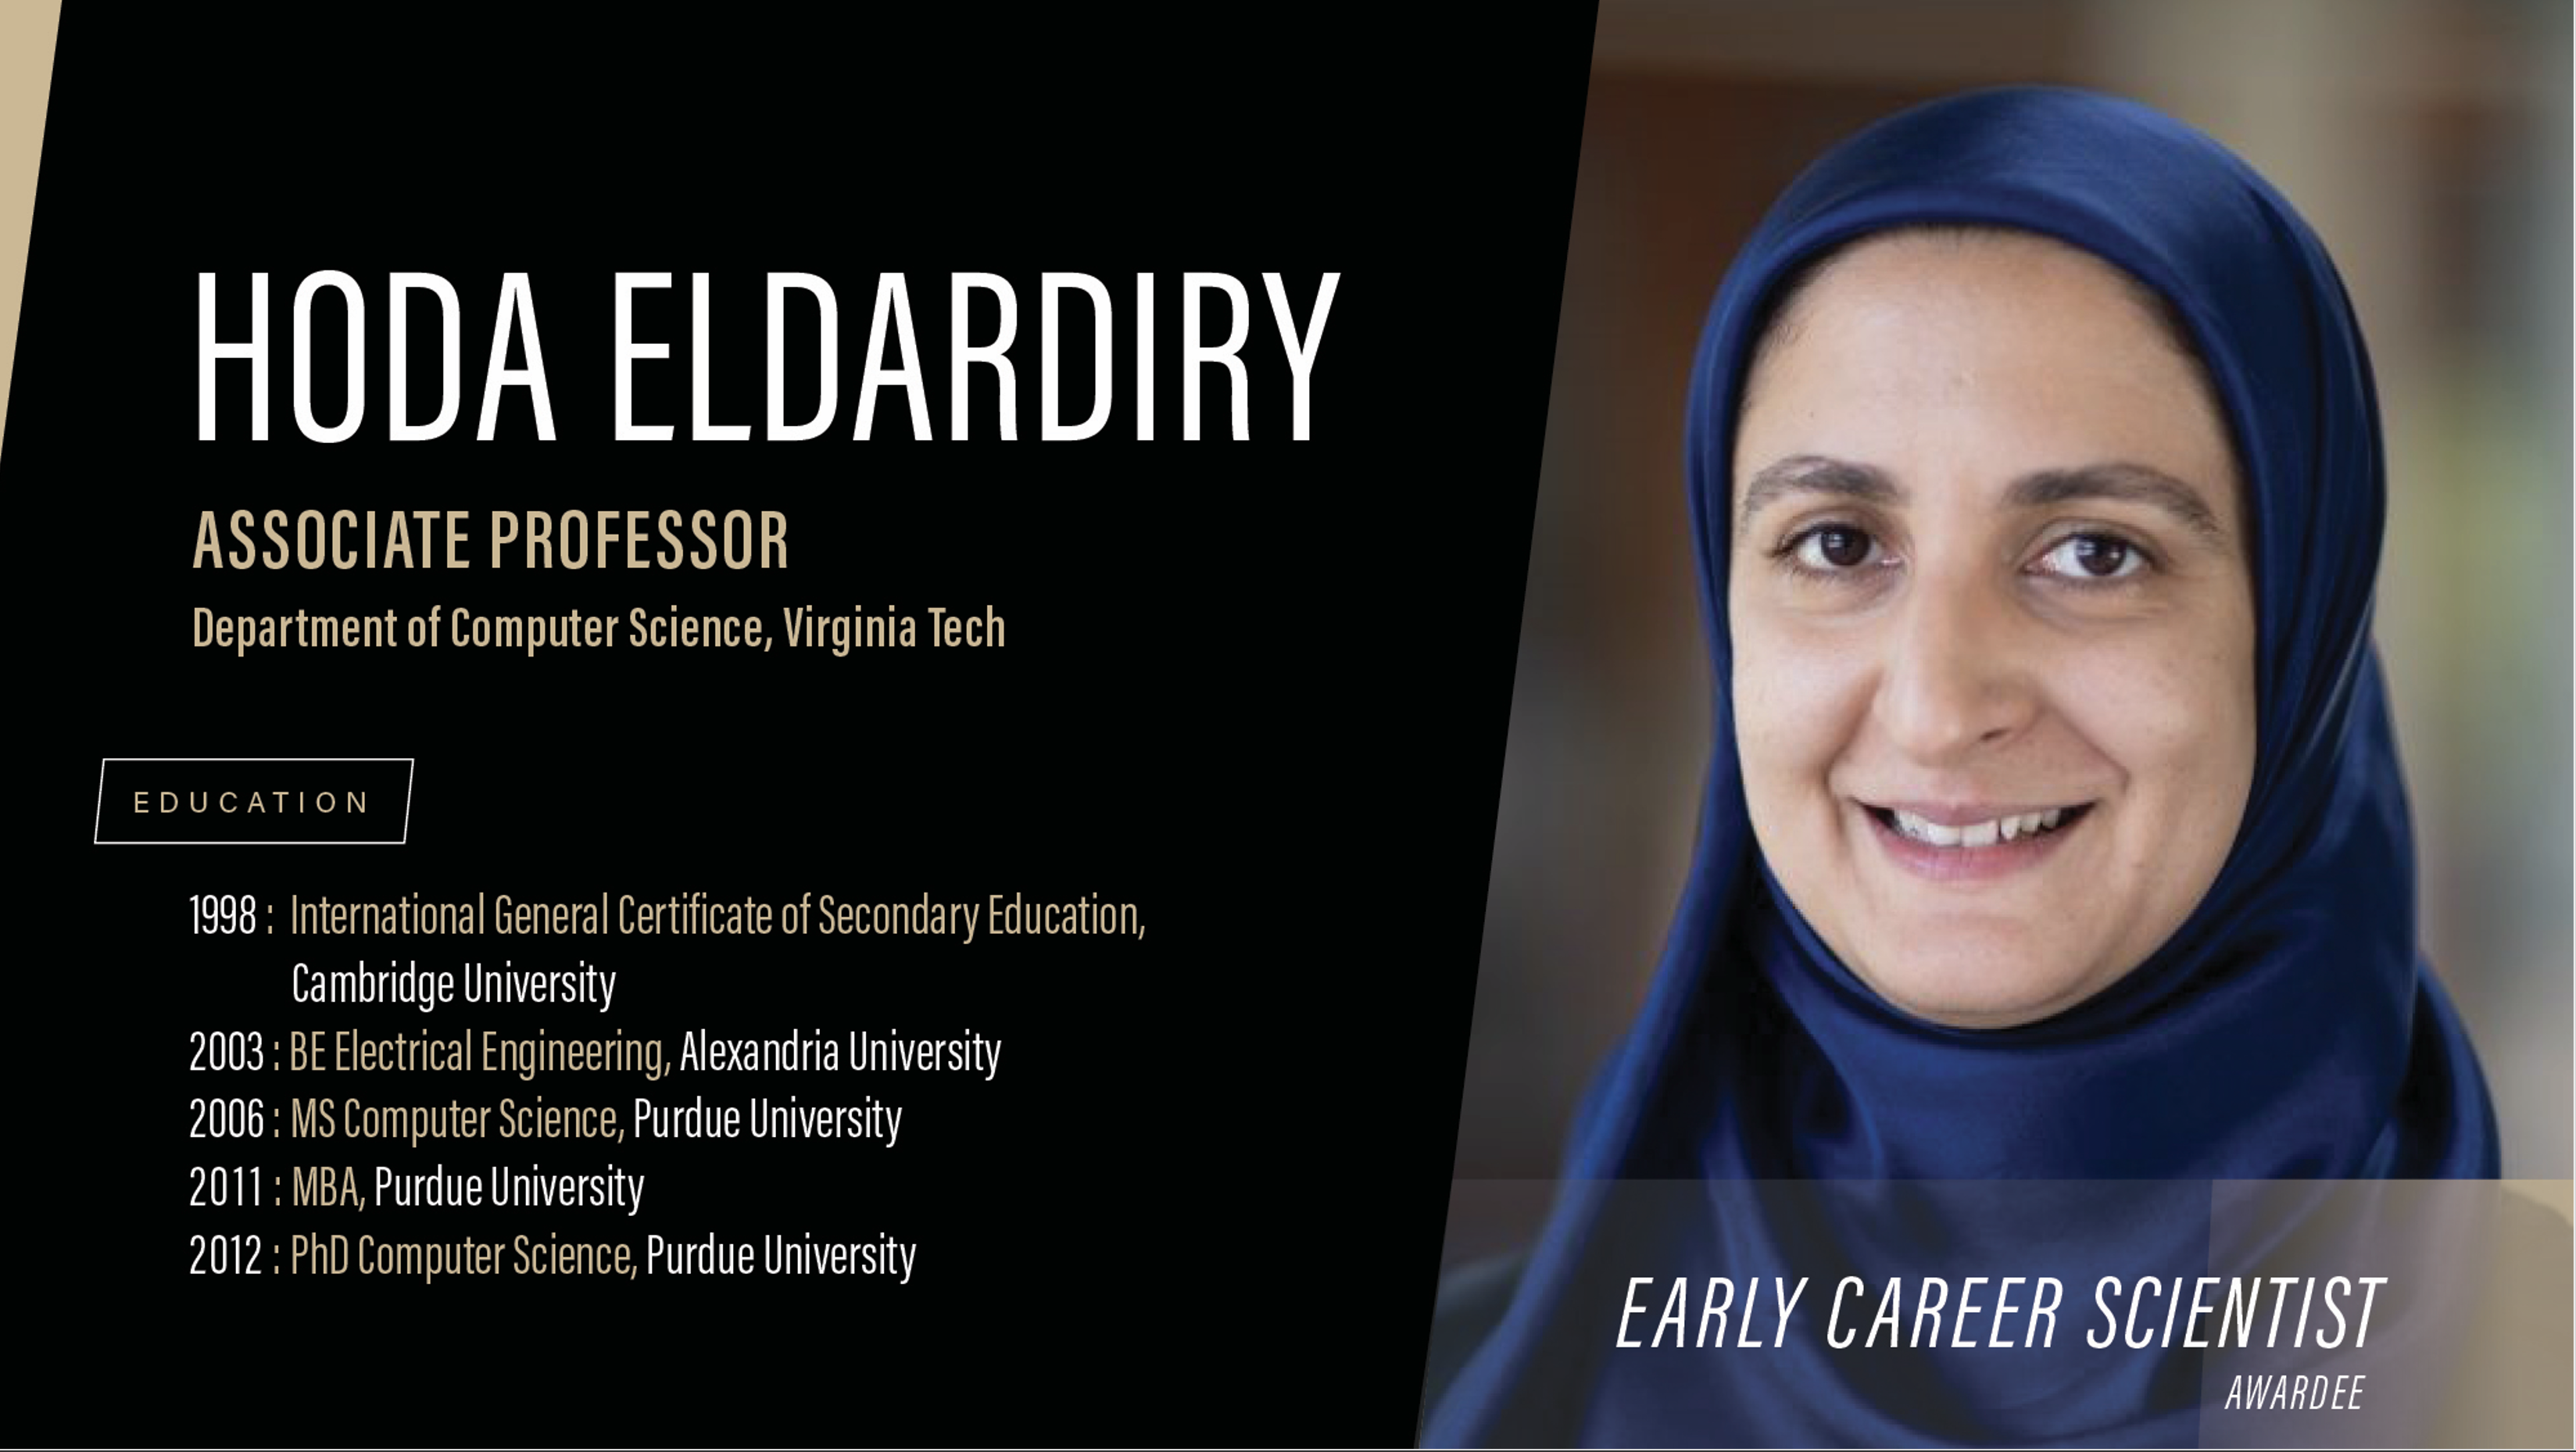 Professor Hoda Eldardiry